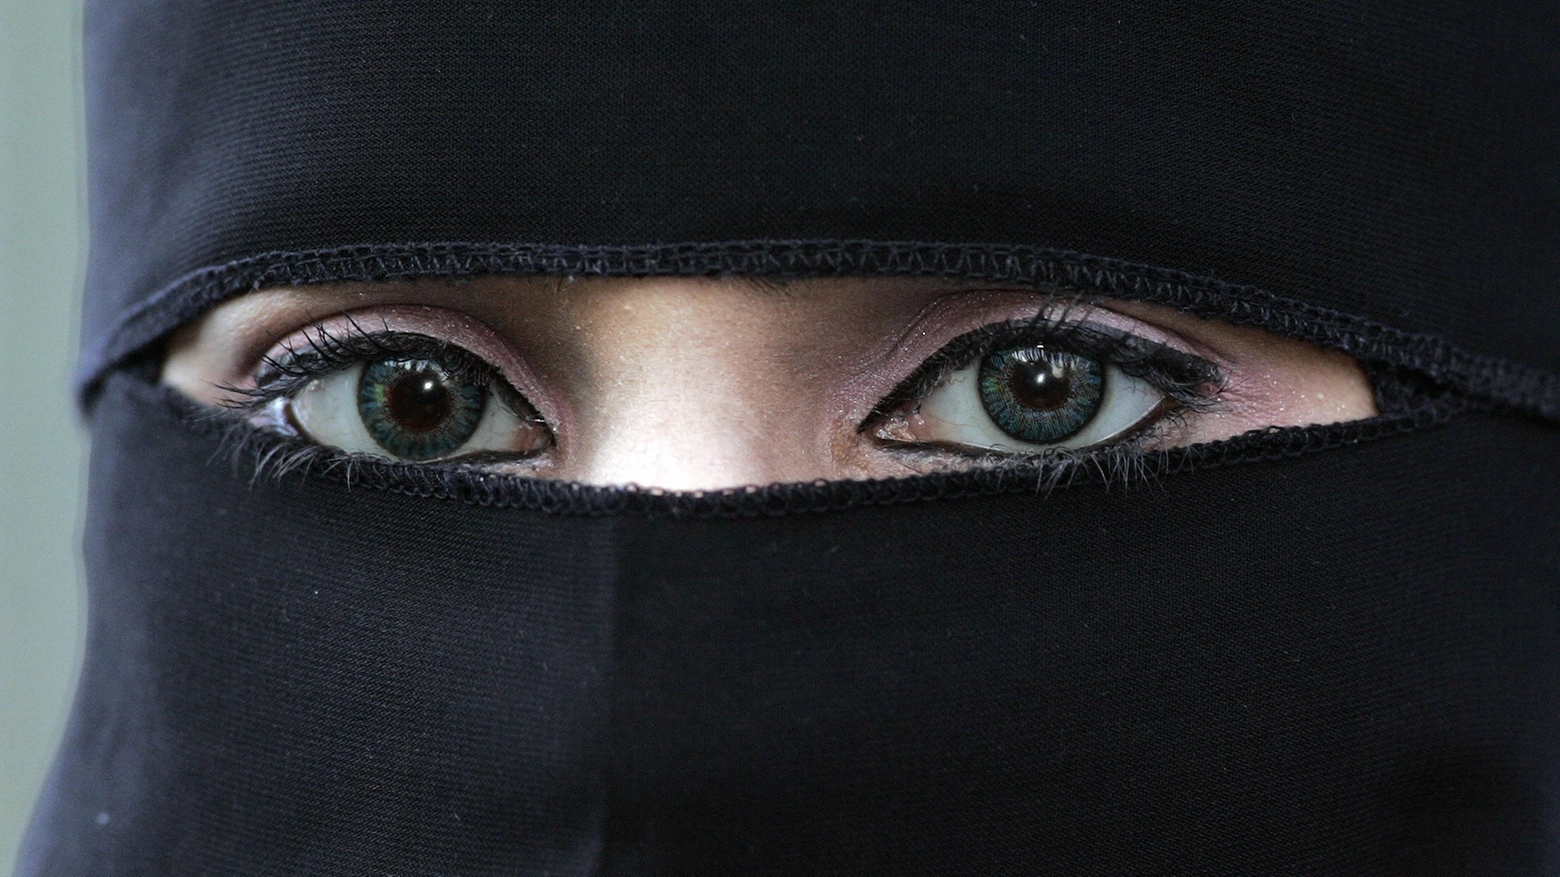 La giovane donna musulmana, sposata con un matrimonio concordato, ora vive in una struttura protetta. Maltratta anche davanti ai figli piccoli